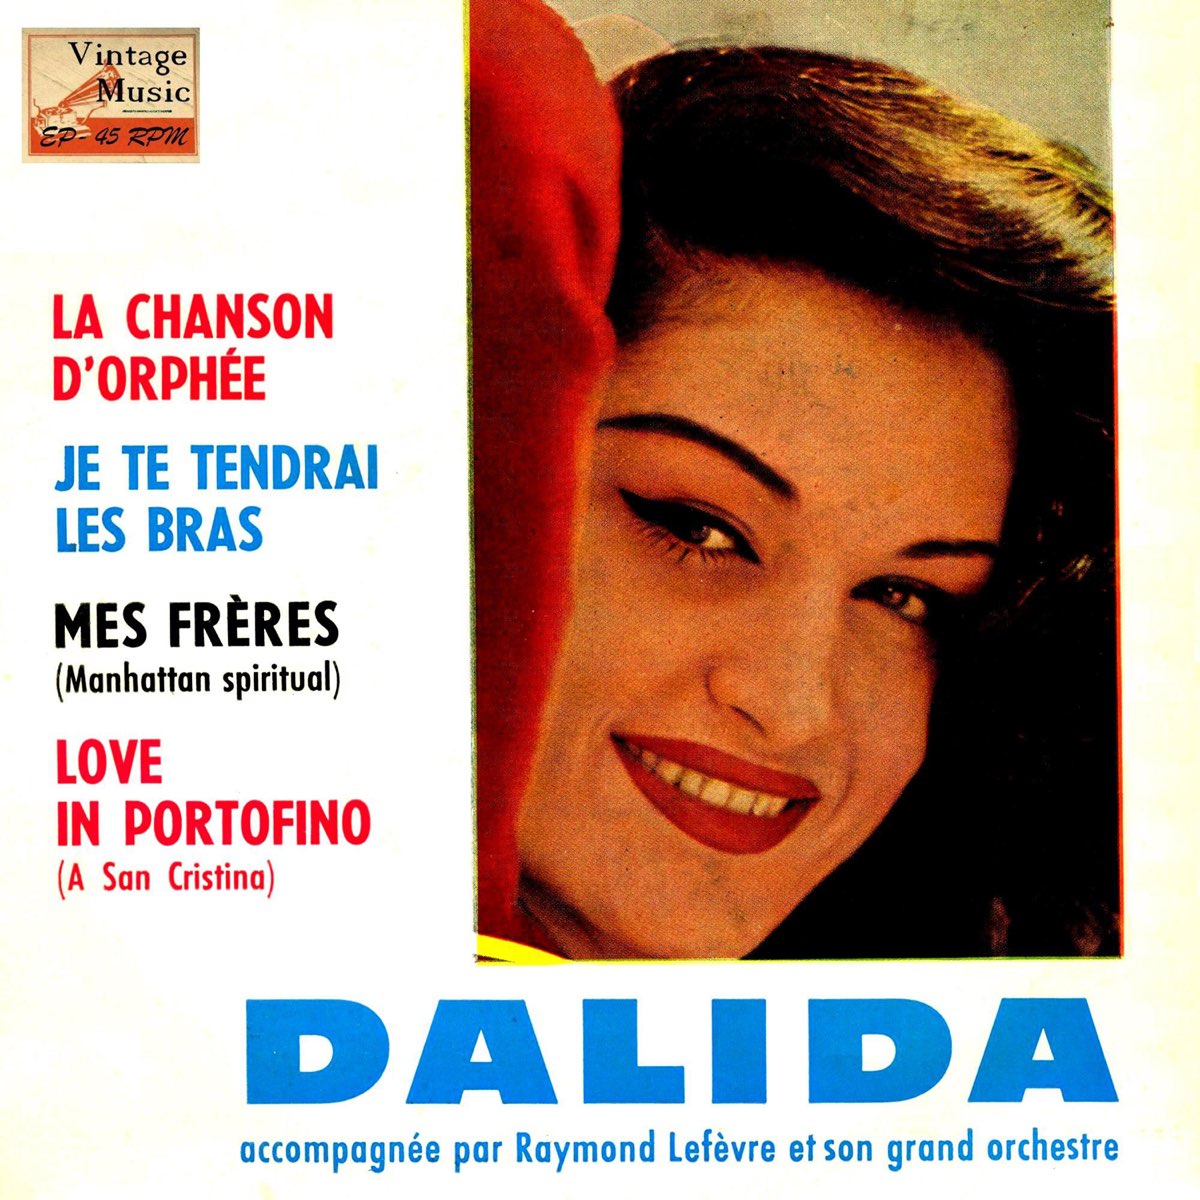 Love in portofino. Dalida 1959. Далида Portofino. Love in Portofino Далида. Dalida and lovers.